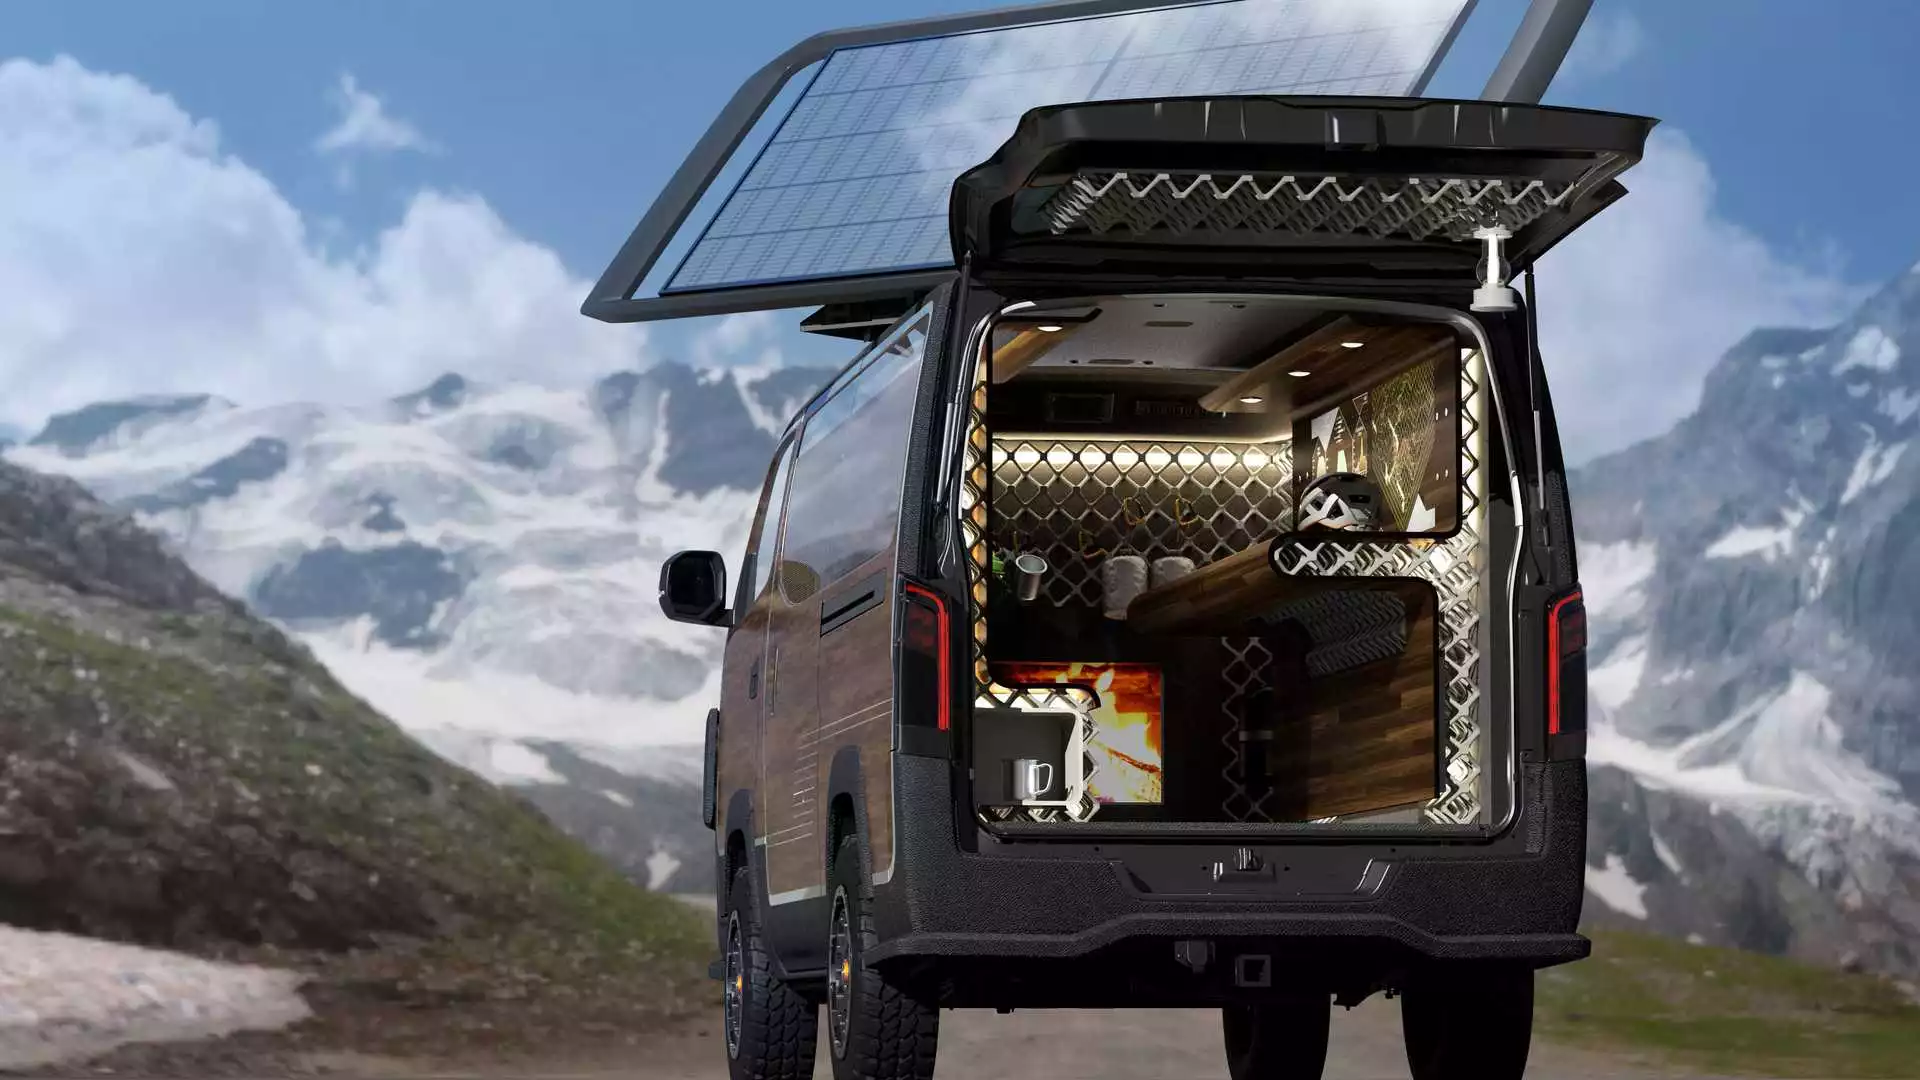 Nissan Caravan Mountain Base Concept 